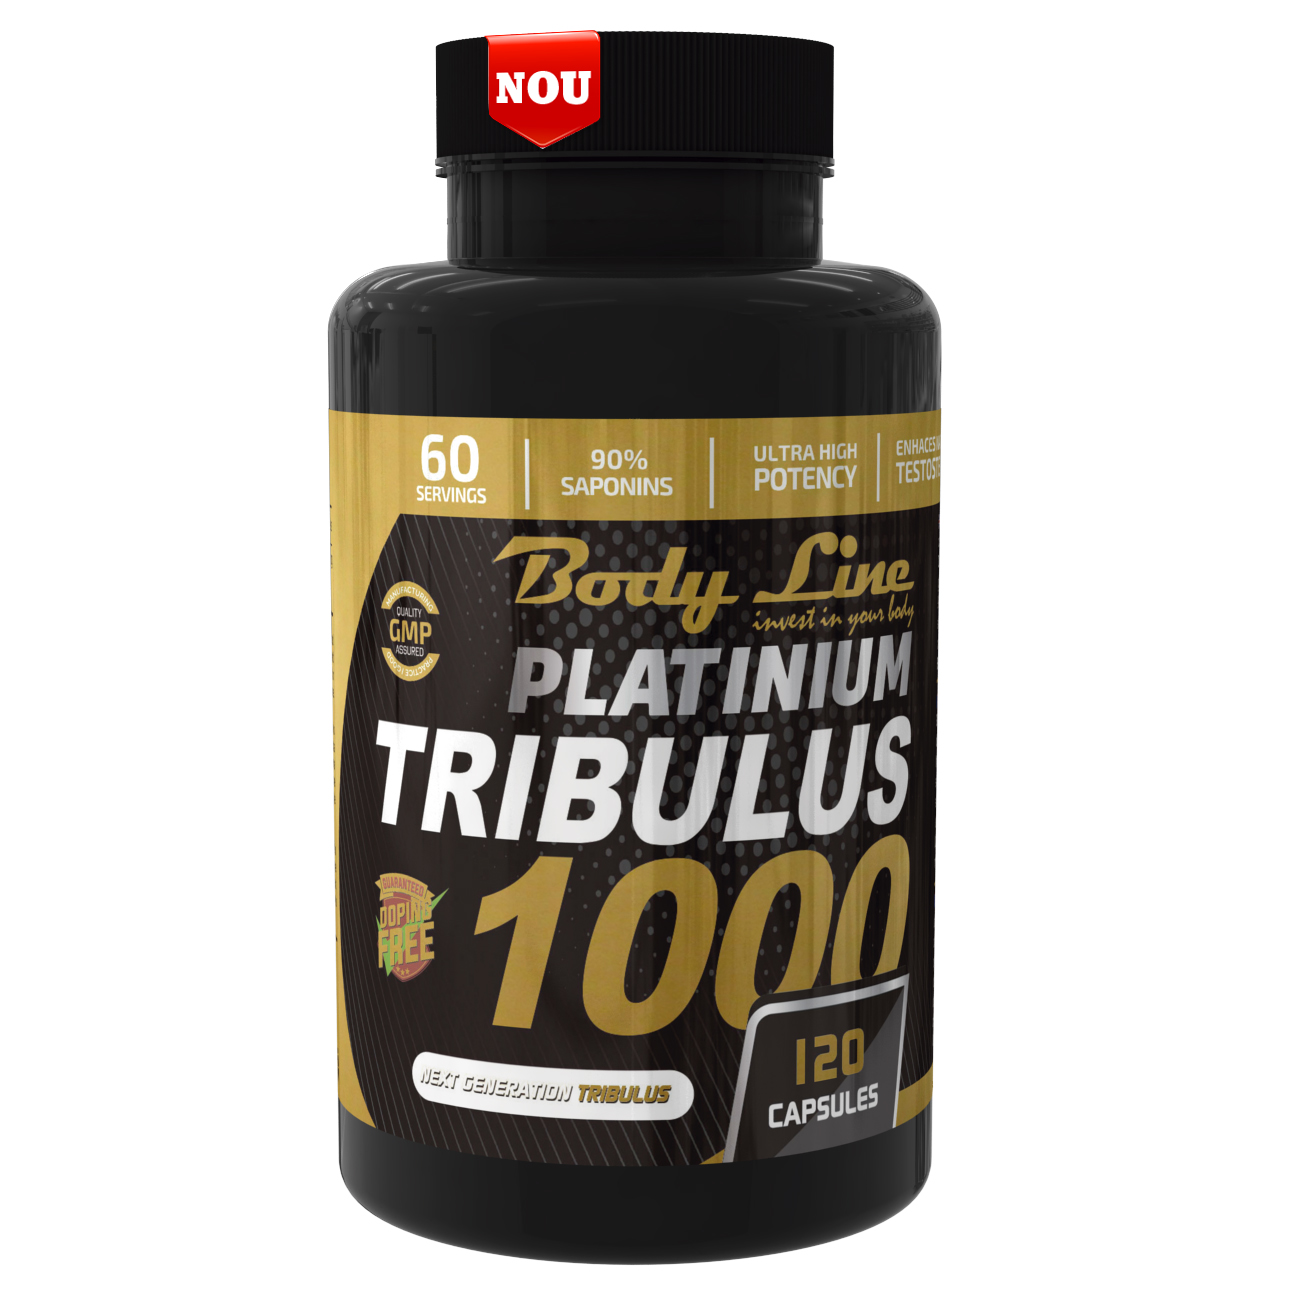 PLATINIUM TRIBILUS 1000